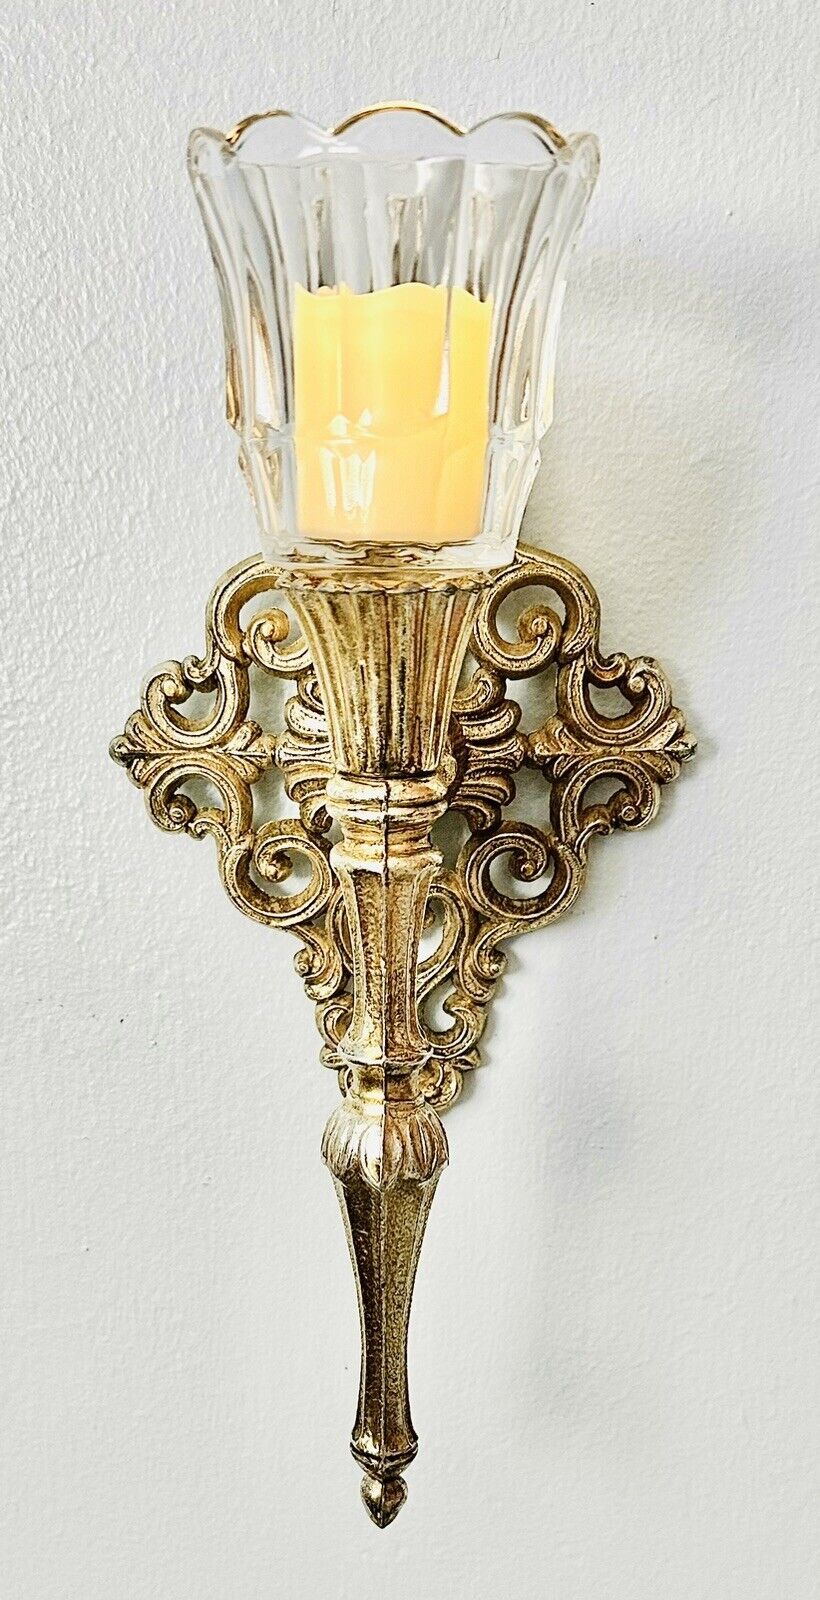 Vintage Hollywood Regency Cast Metal Gold Wall Sconce Candle Holder W/Votive